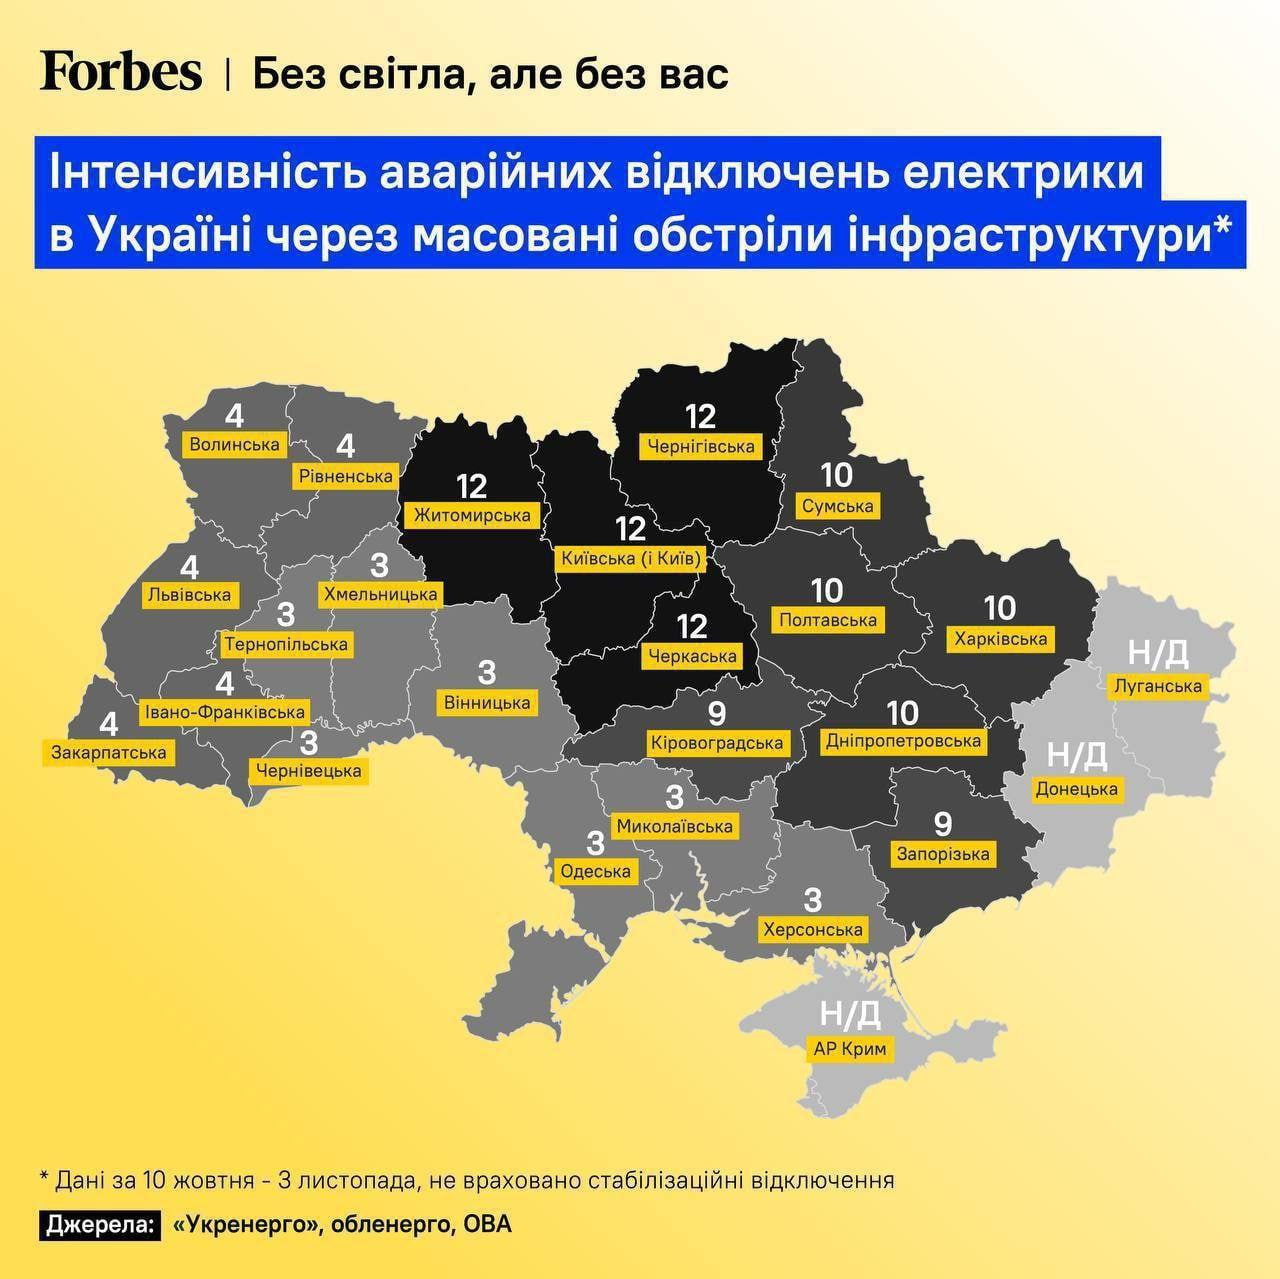 Украина 5 областей. Украина по областям. Украина по регионам. Территория Украины 2020.